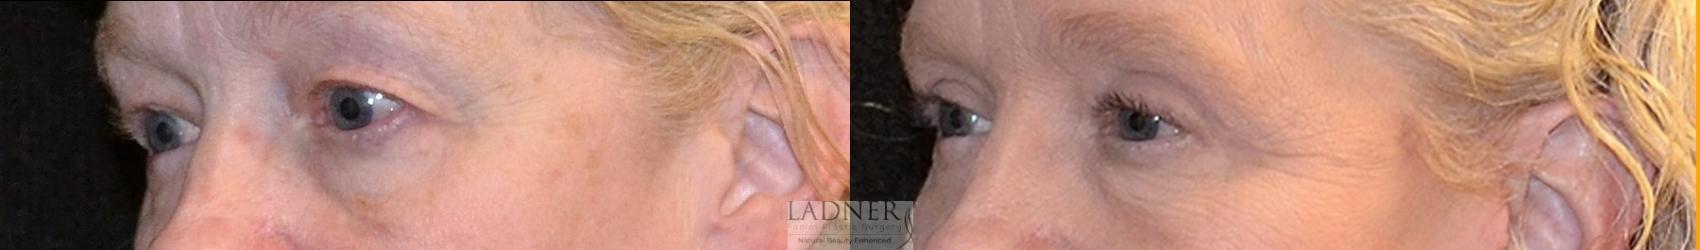 Eyelid Surgery (blepharoplasty) Case 55 Before & After Left Oblique | Denver, CO | Ladner Facial Plastic Surgery